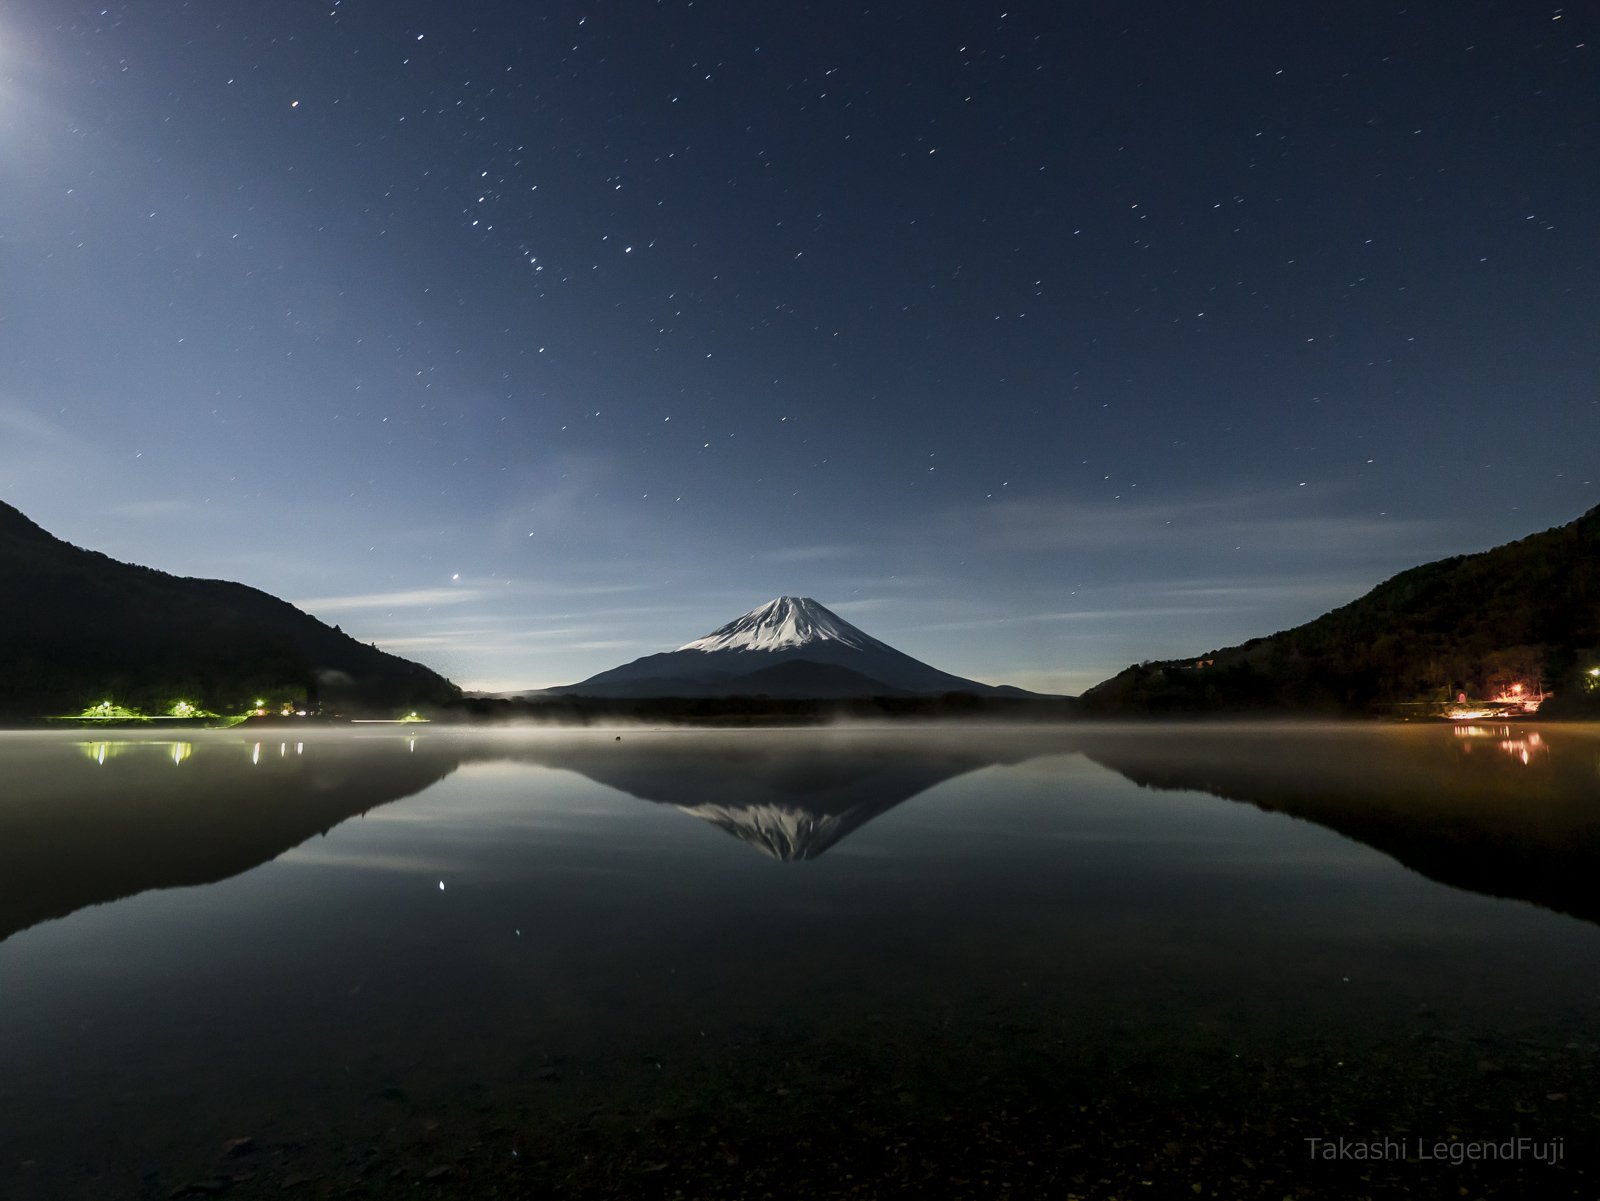 Fuji,mountain,Japan,lake,water,reflection,night,moonlight,cloud,snow,star,, Takashi